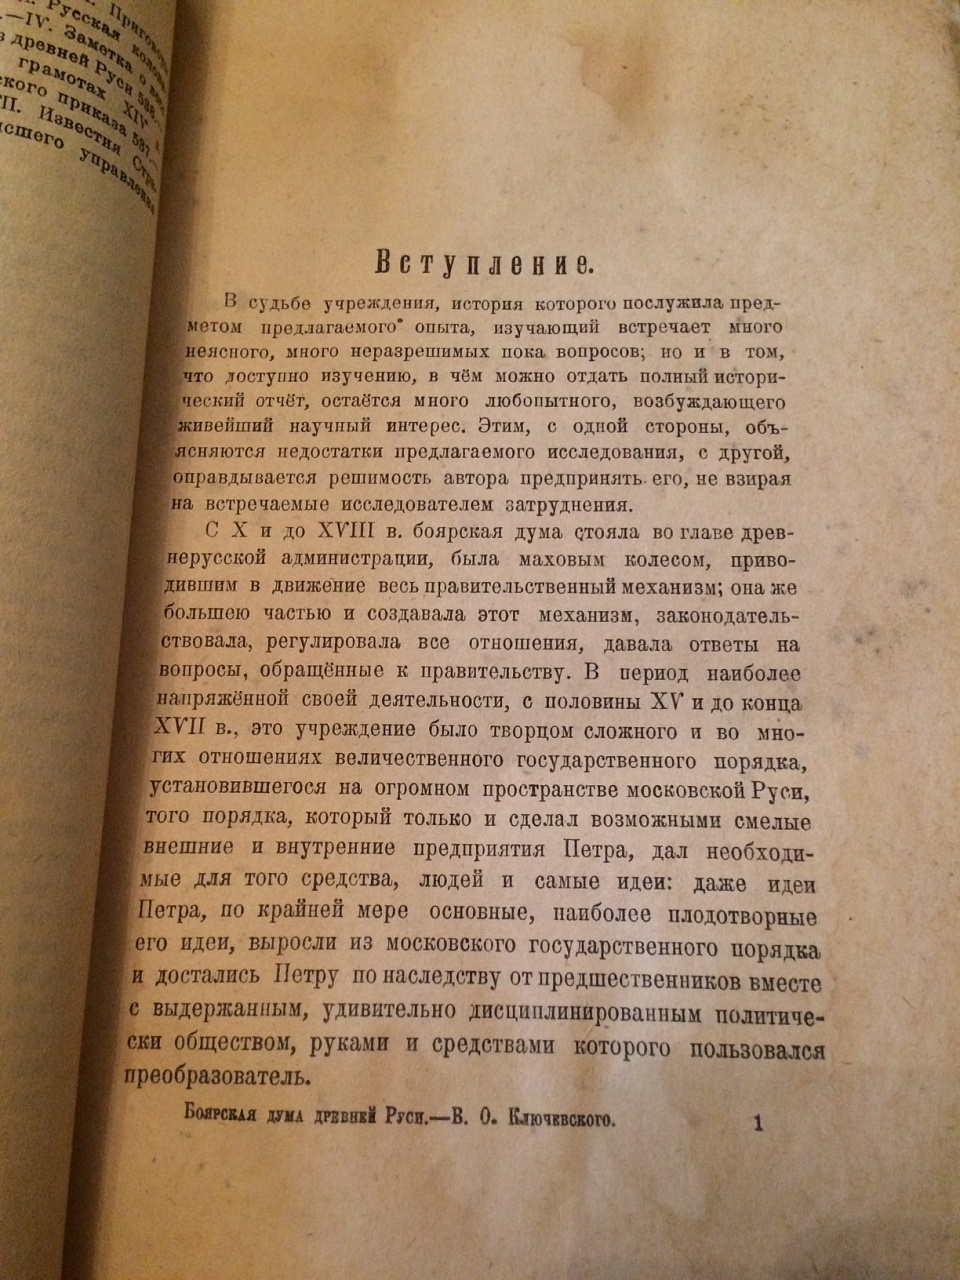 В.О.Ключевский, "Боярская дума древней Руси" 1919 год фото 5